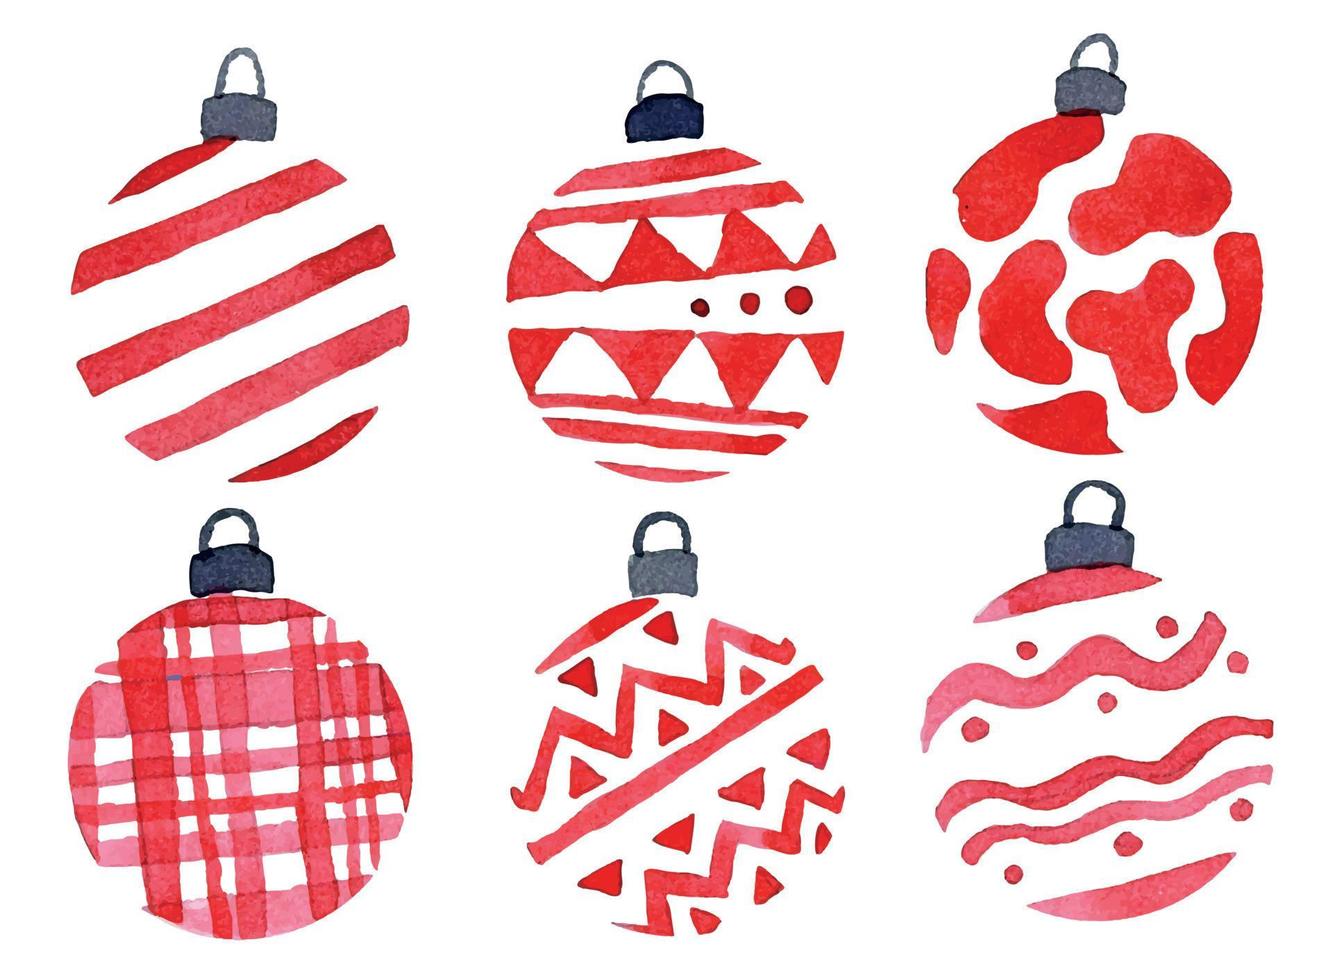 akvarell ritset med julgran leksaker, bollar. bollar av röd färg med en enkel prydnad. abstrakt semesterdekorationer nyår, jul vektor